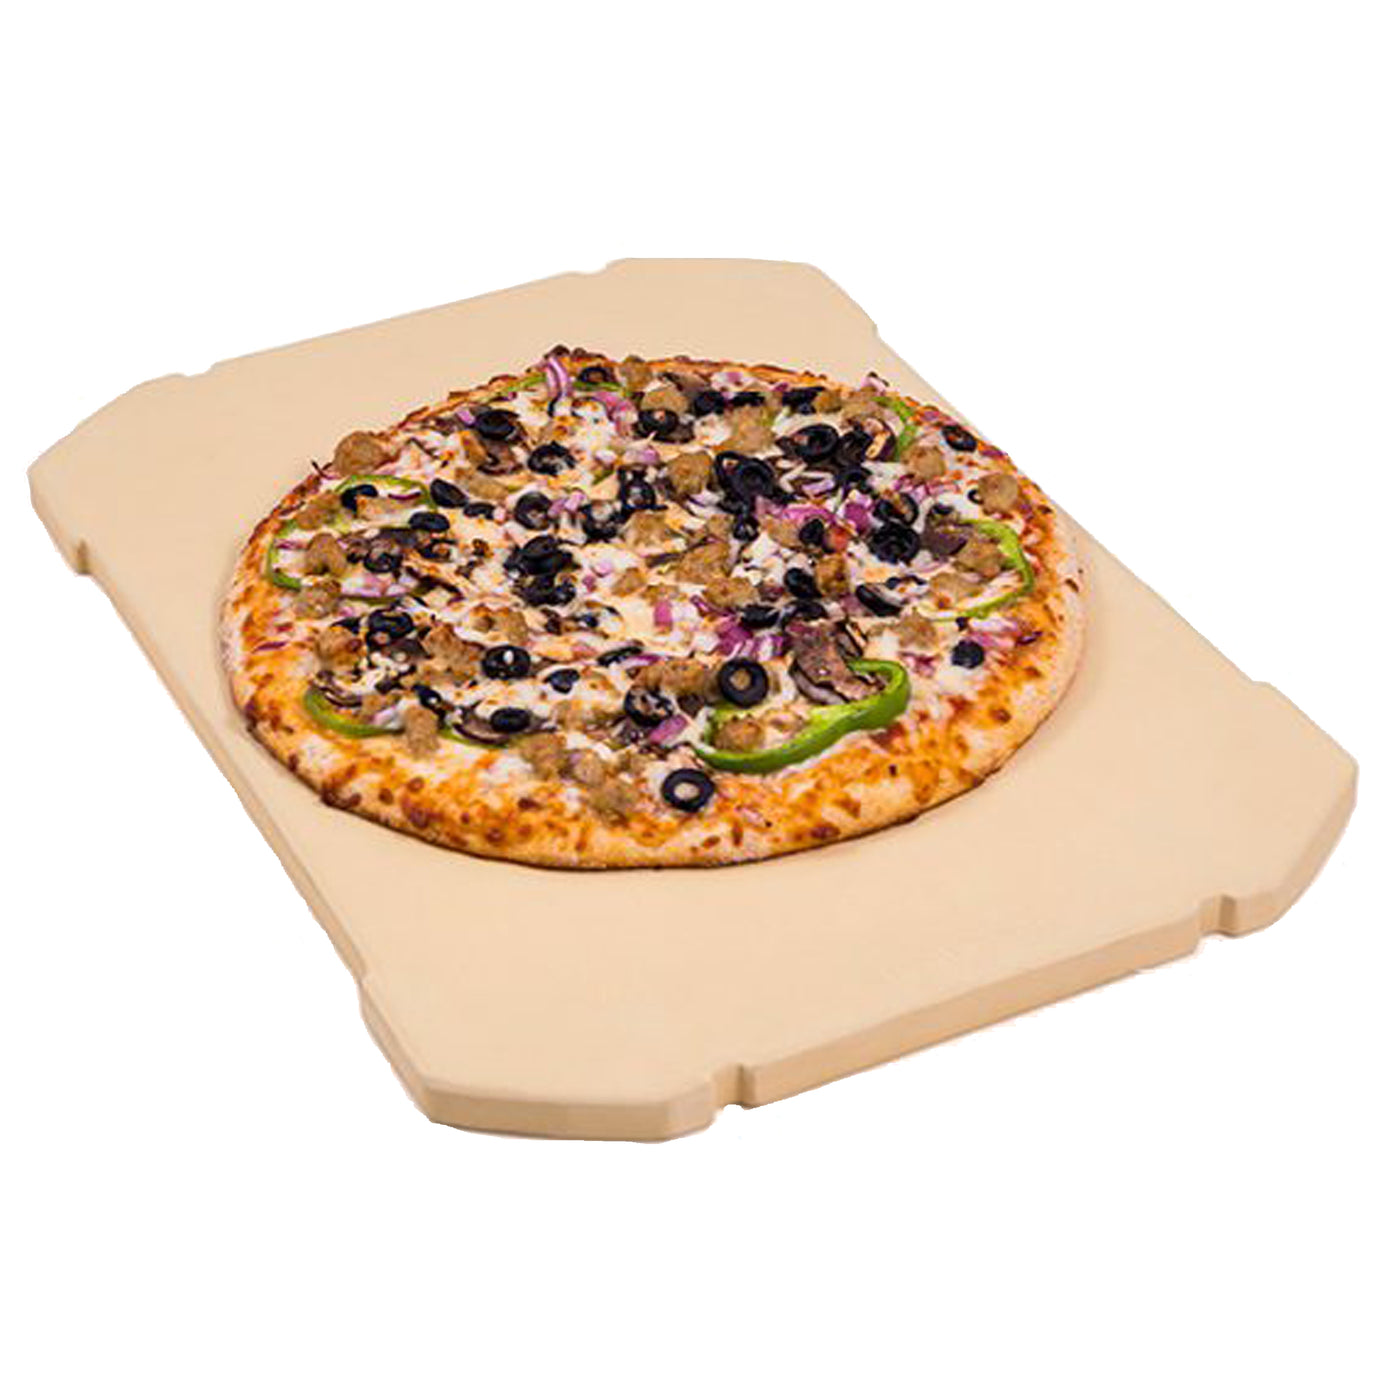 Pierre à Pizza Rectangulaire avec Poignées 37,5x30 cm et Coupe Pizza